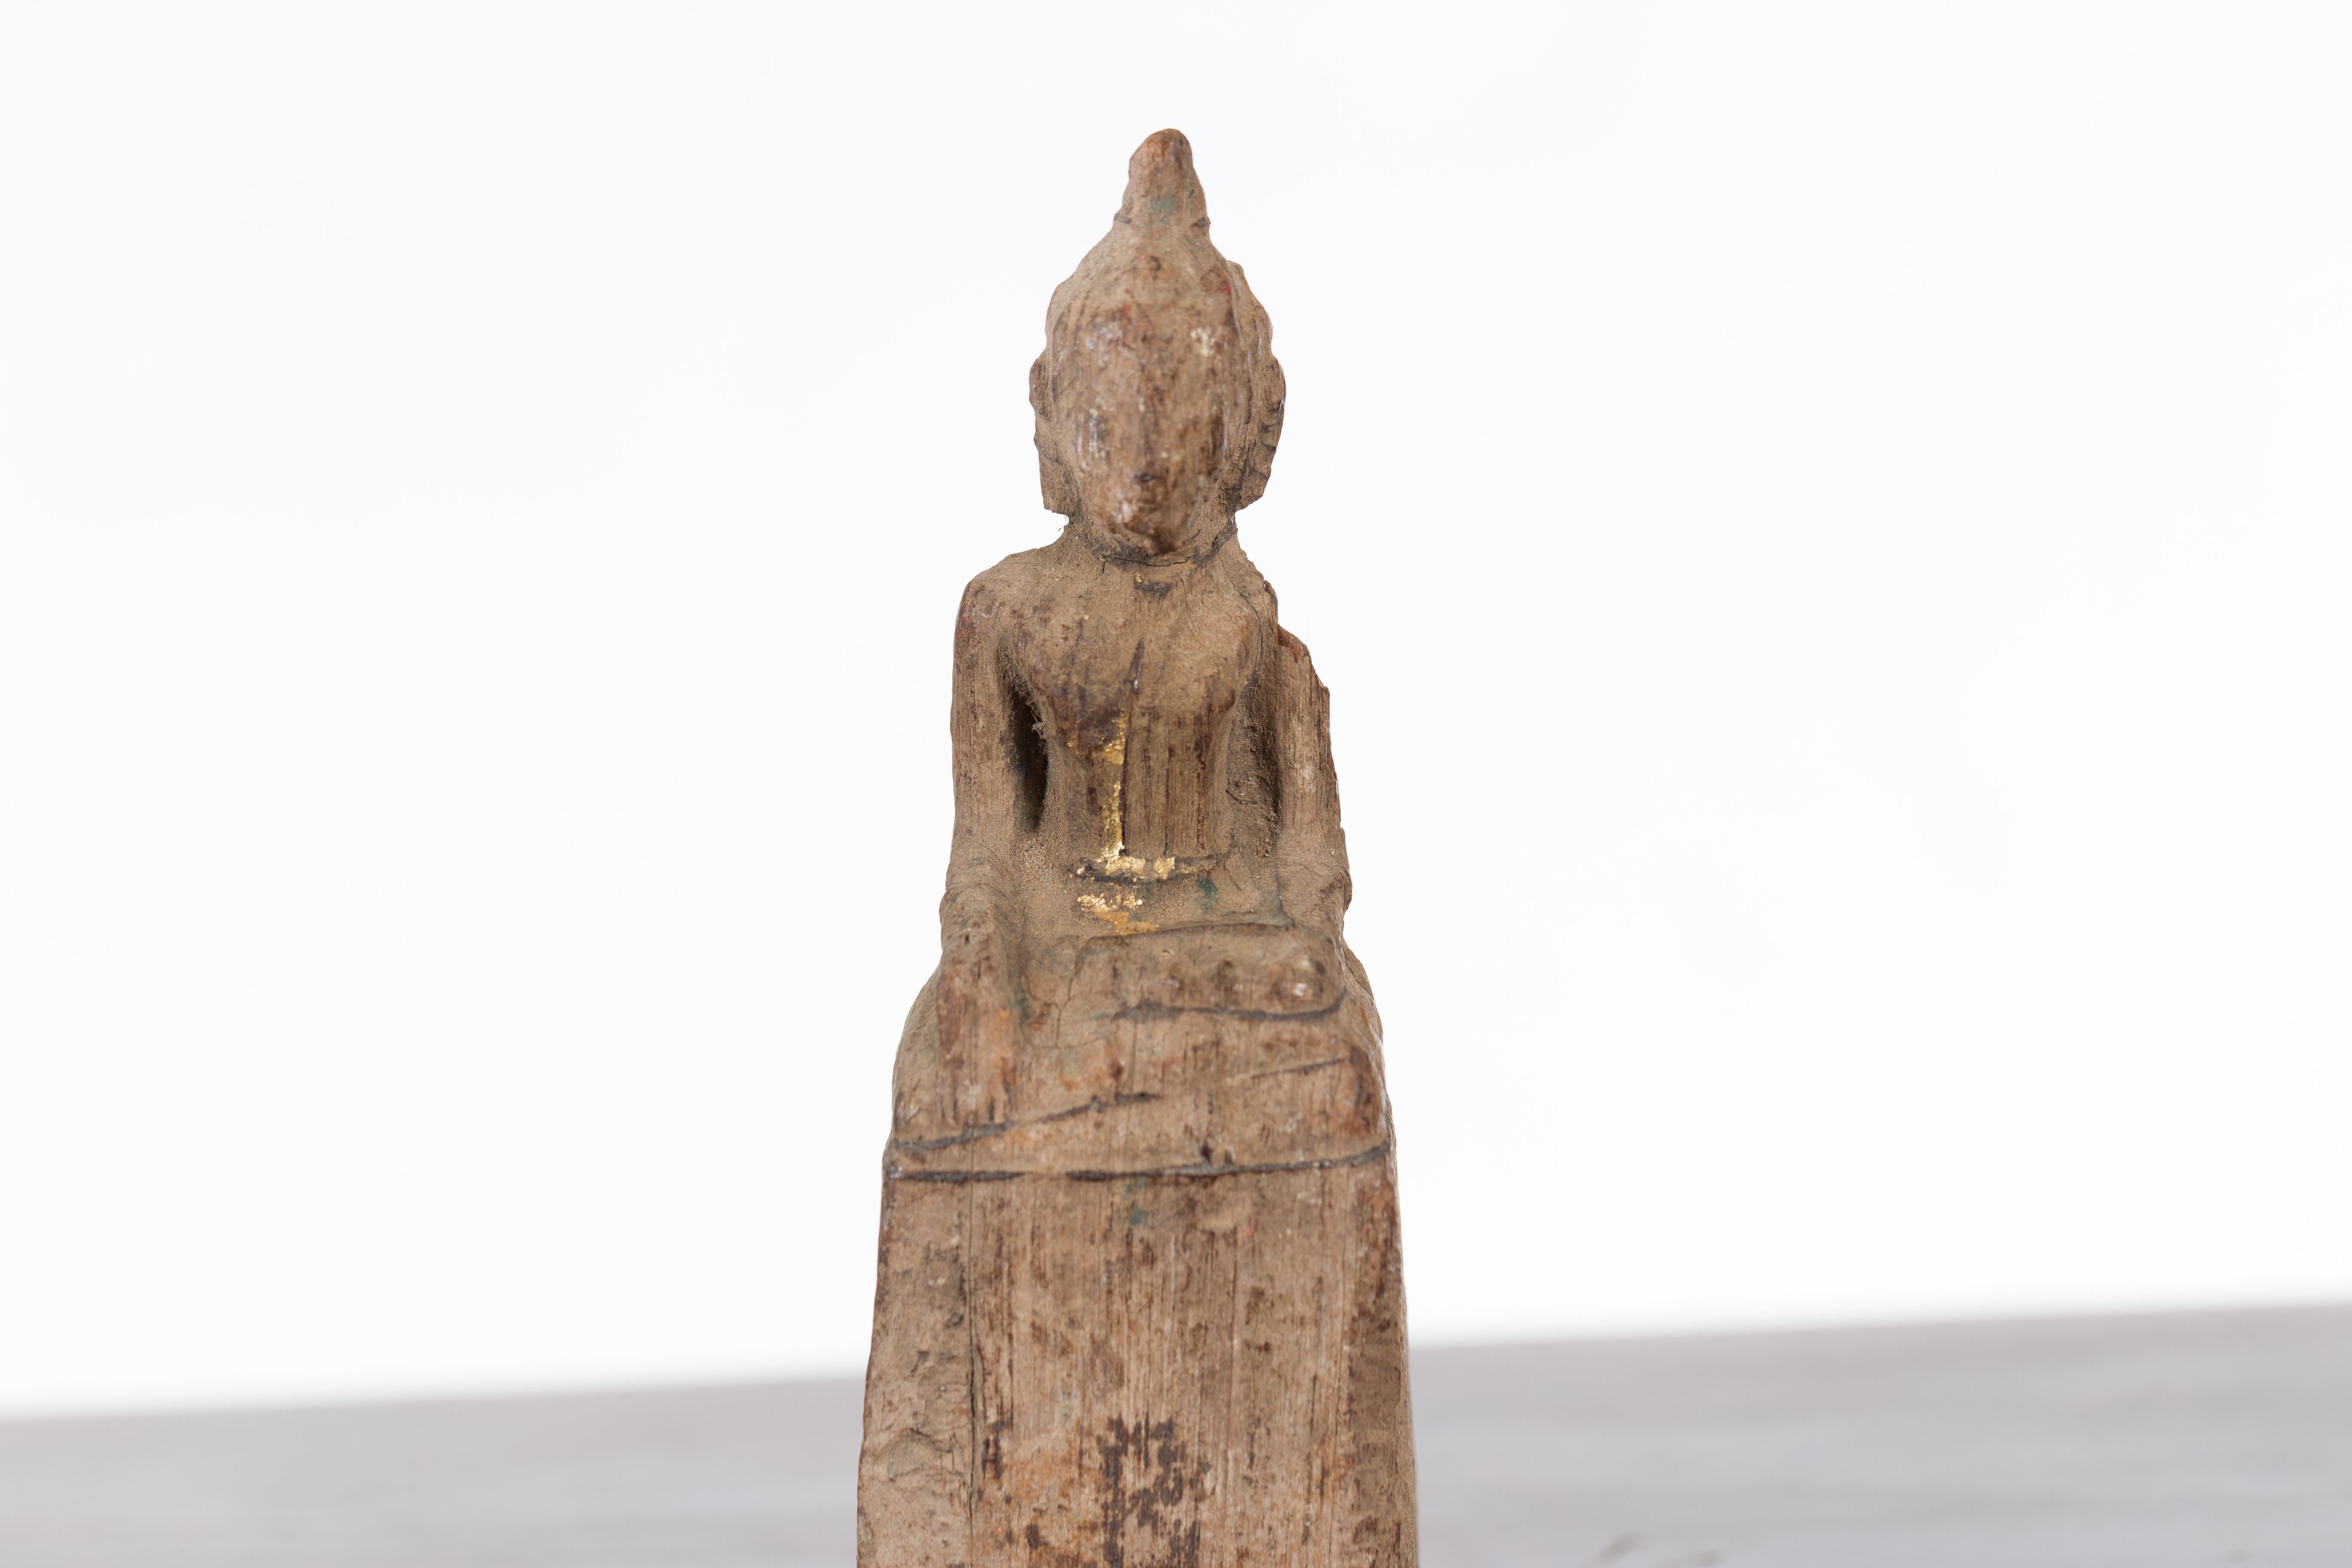 Hand-Carved Petite Wooden Thai Ayutthaya Period Buddha Sculpture with Bhumisparsha Mudra